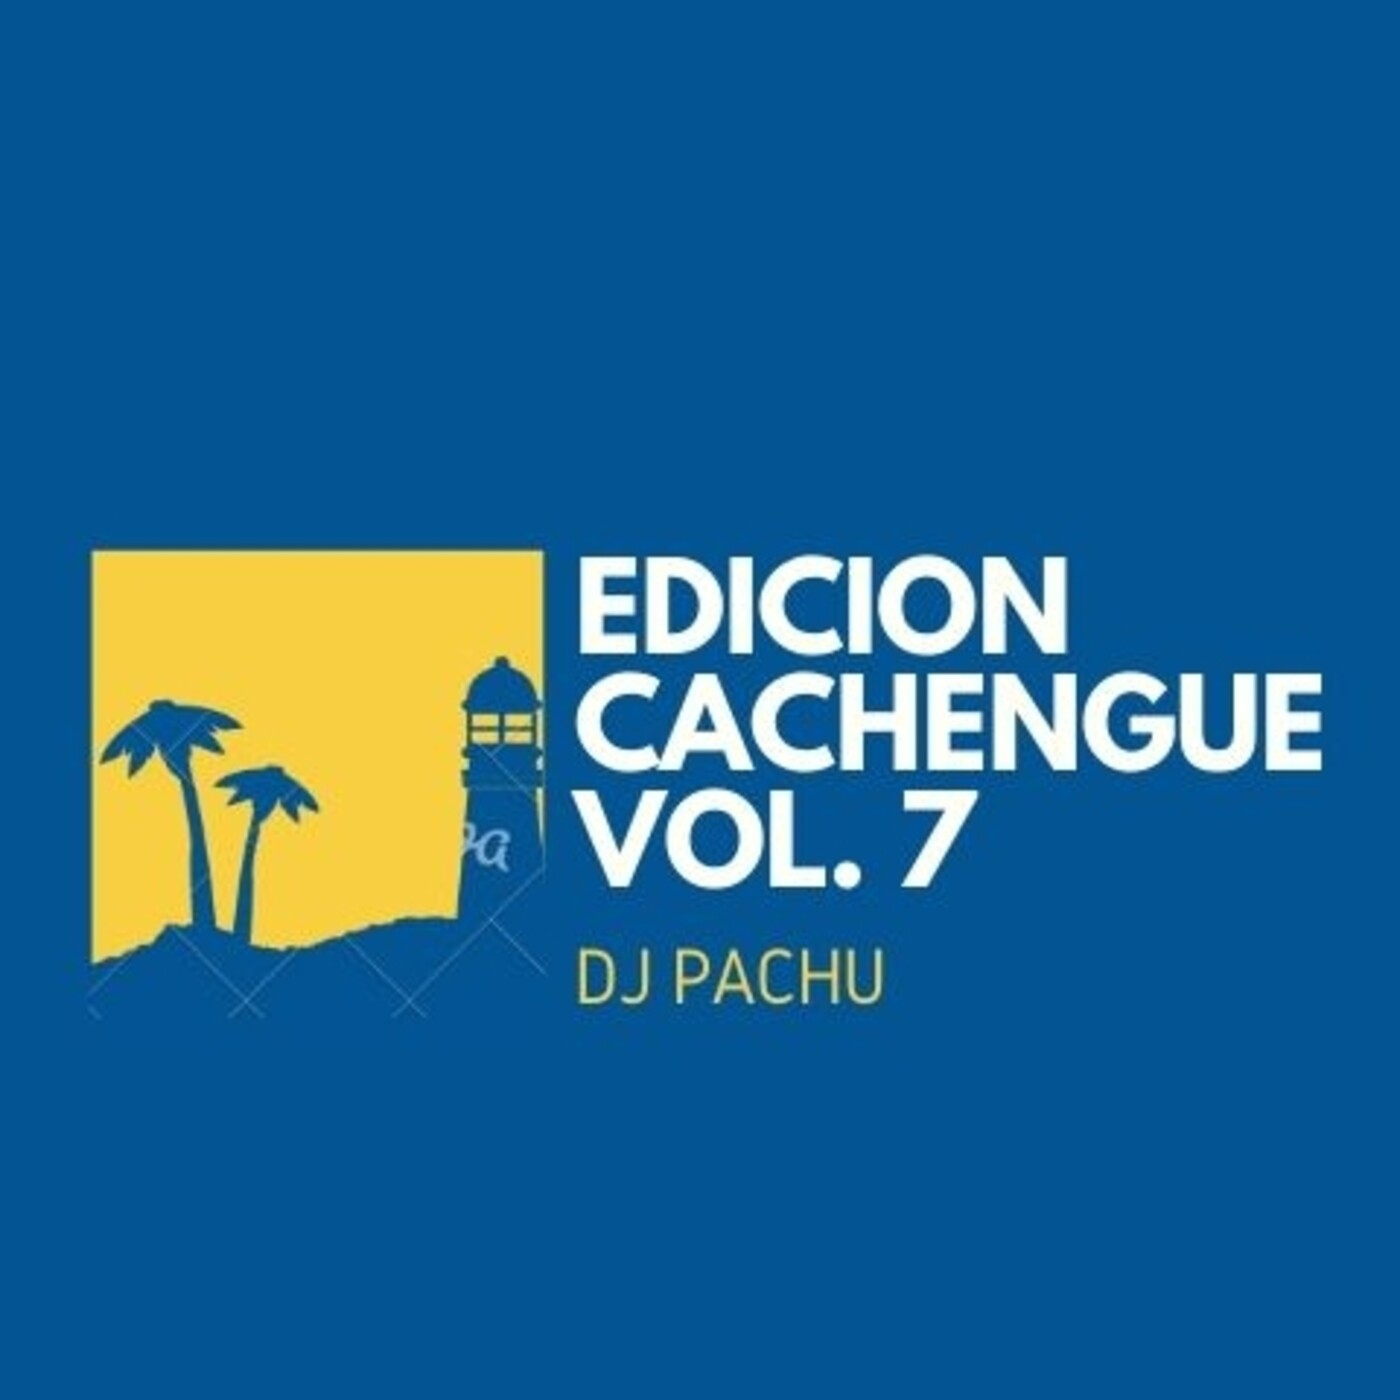 Edicion Cachengue Vol. 7 DJ PACHU